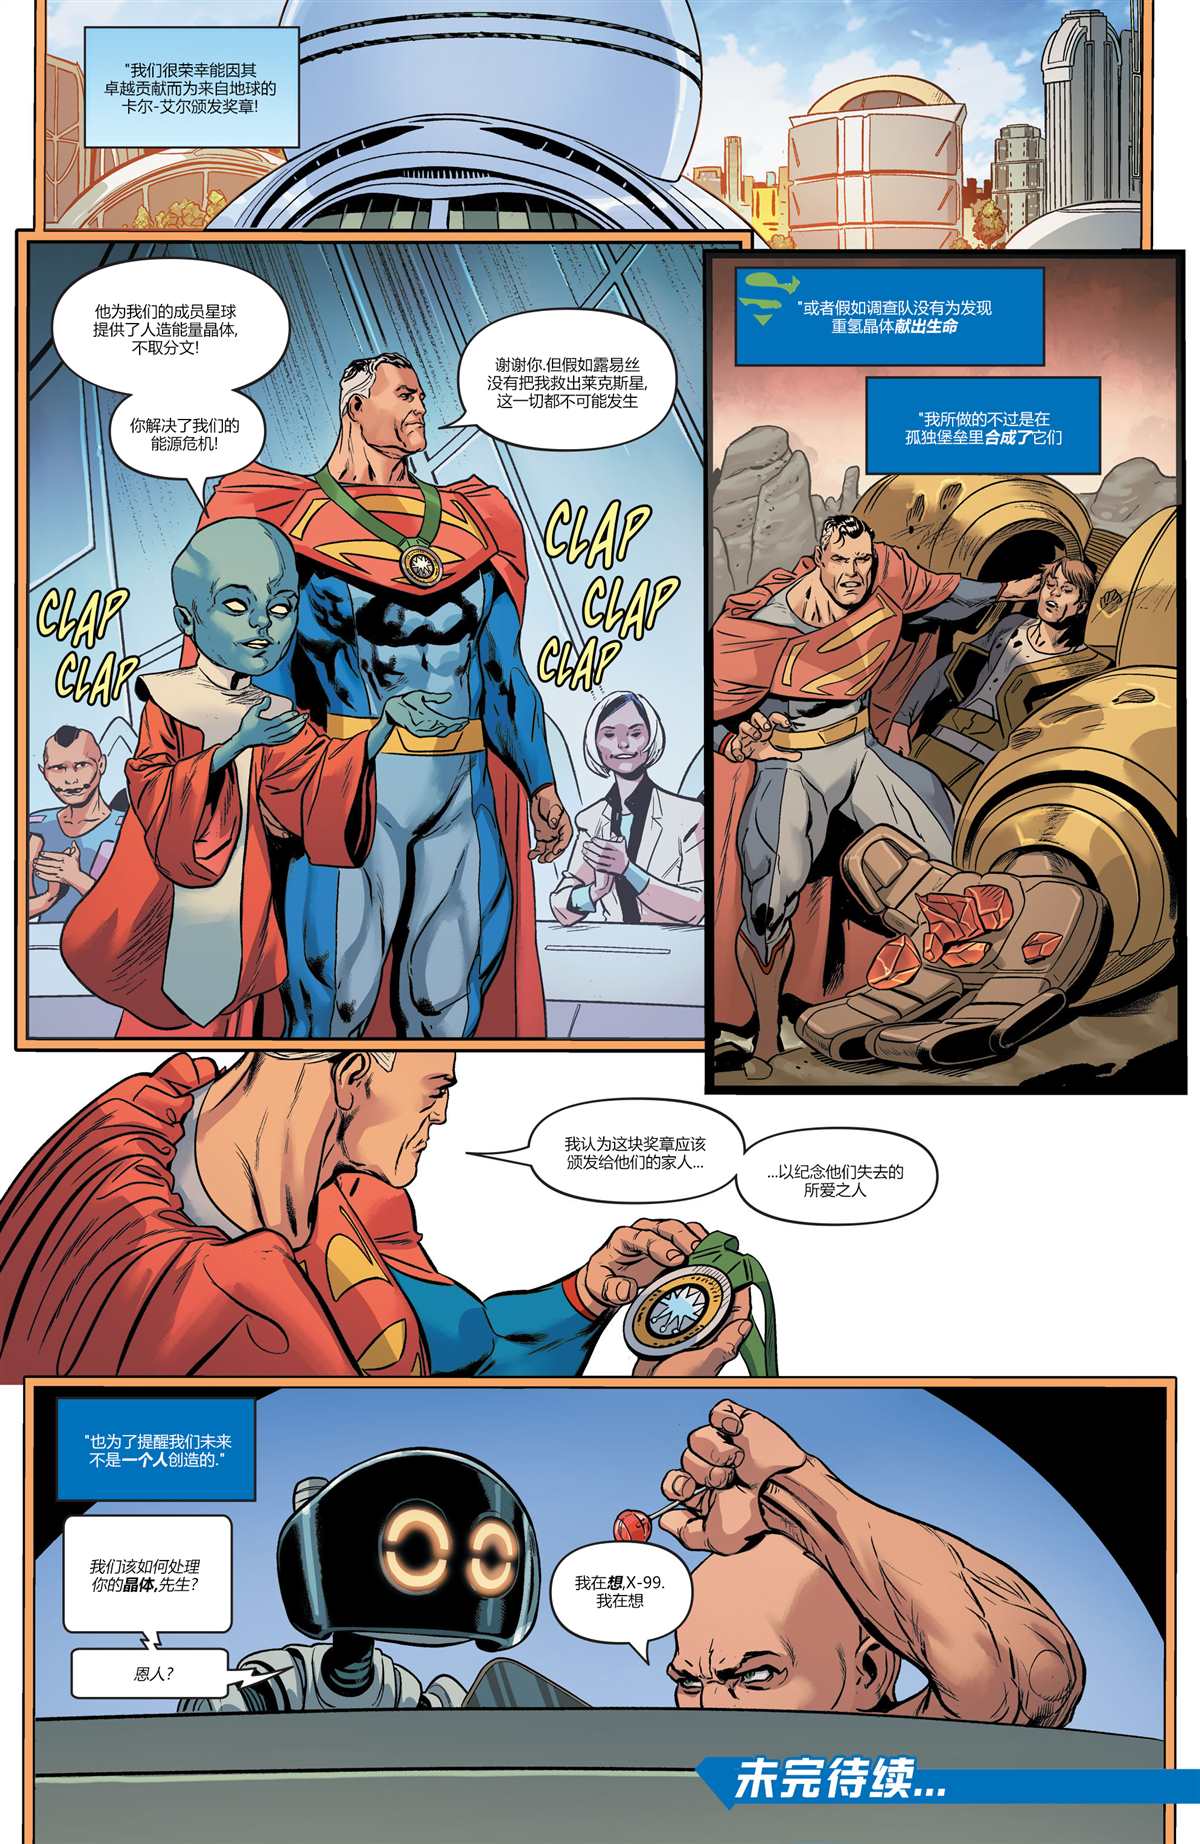 未来态-超人大战霸王莱克斯#222